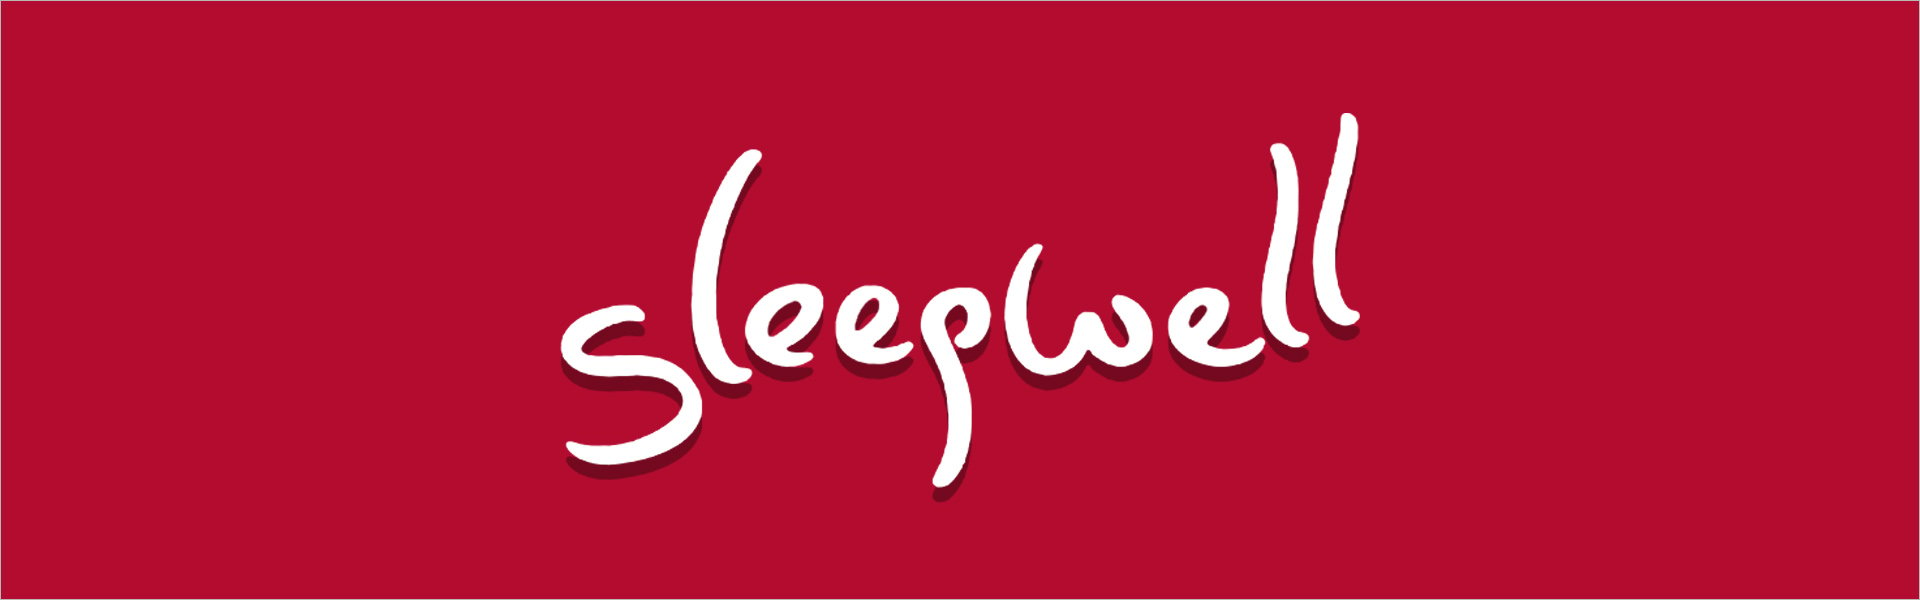 Наматрасник Sleepwell TOP Serene Lux 160 x 200 Sleepwell